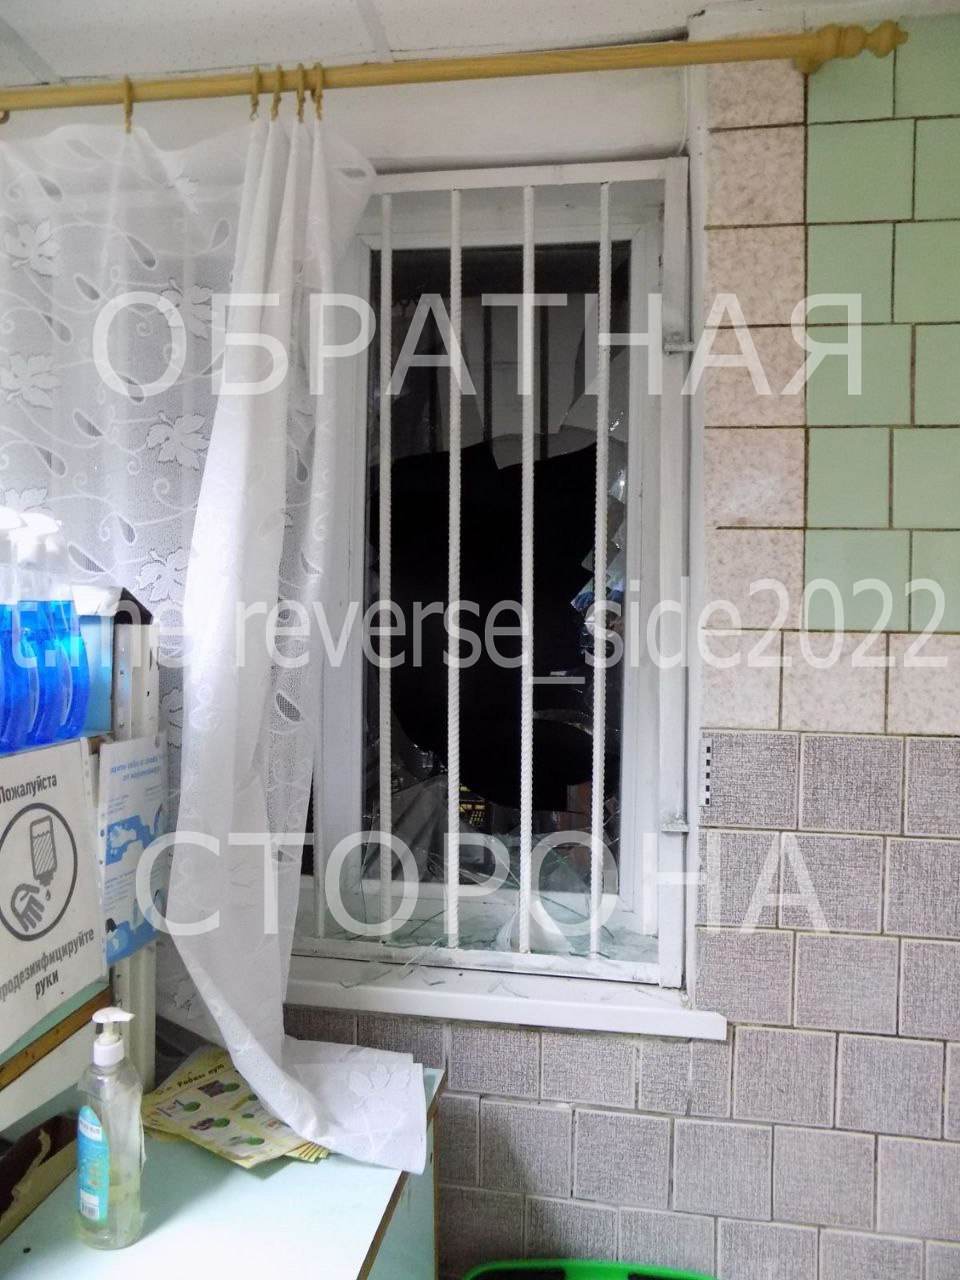 В Кричевском районе мужчина так искал компанию, что украл собаку и разбил три окна